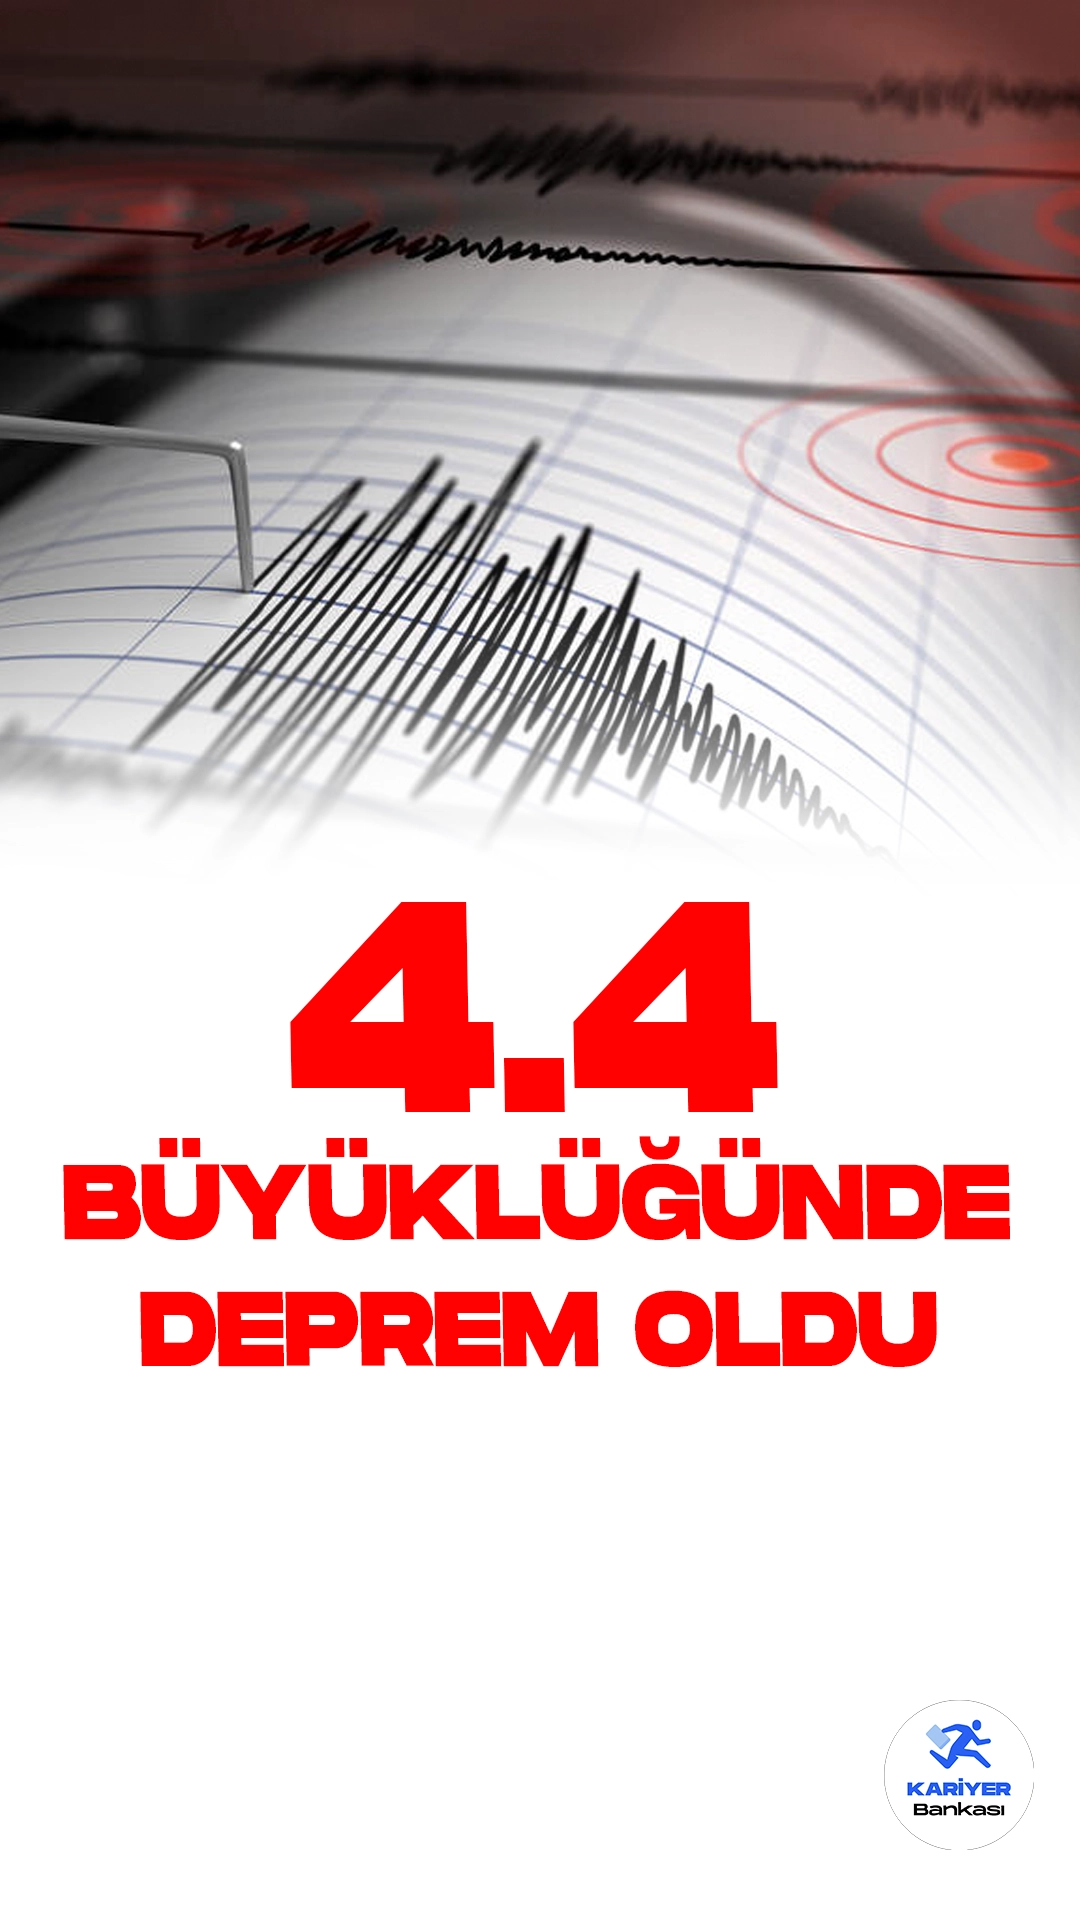 İzmir'de 4.4 Büyüklüğünde Deprem Oldu. İçişleri Bakanlığı Afet ve Acil Durum Yönetimi Başkanlığı resmi sayfasından yayımlanan son dakika bilgisine göre, İzmir'in Menderes ilçesinde 4.4. büyüklüğünde deprem meydana geldiği aktarıldı.